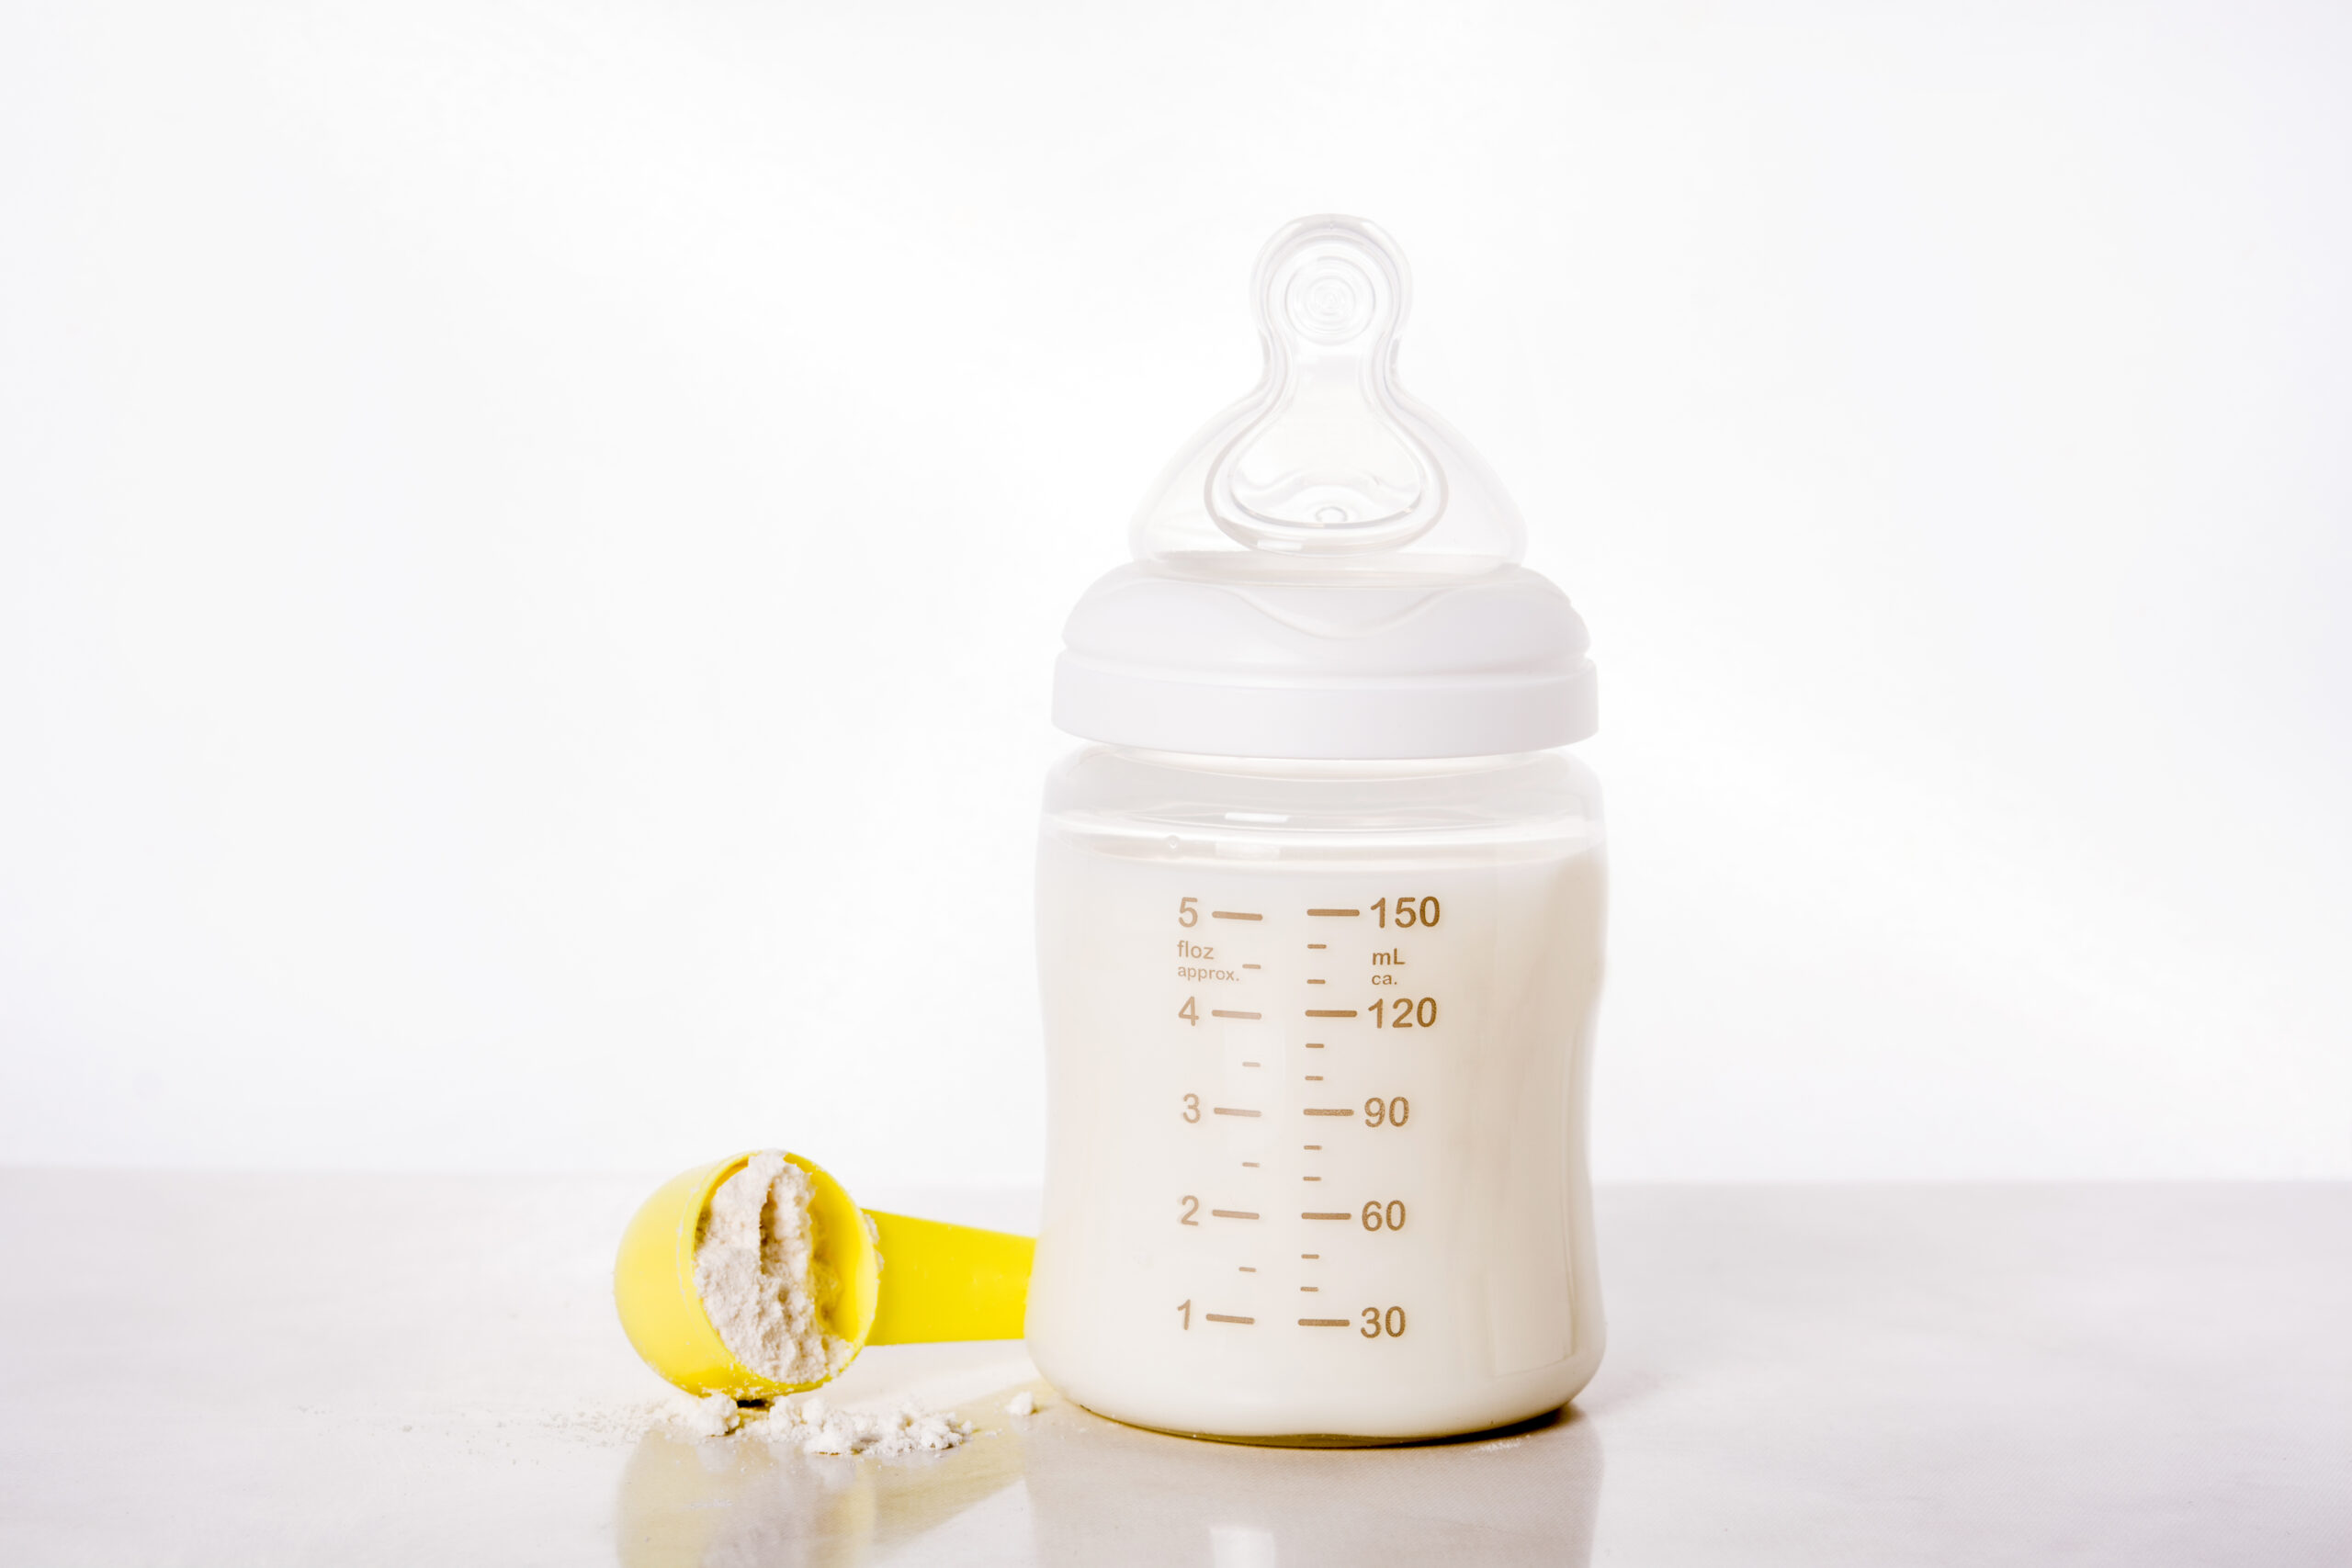 FDA Sends Warning Letters to Ensure Infant Formula Safety